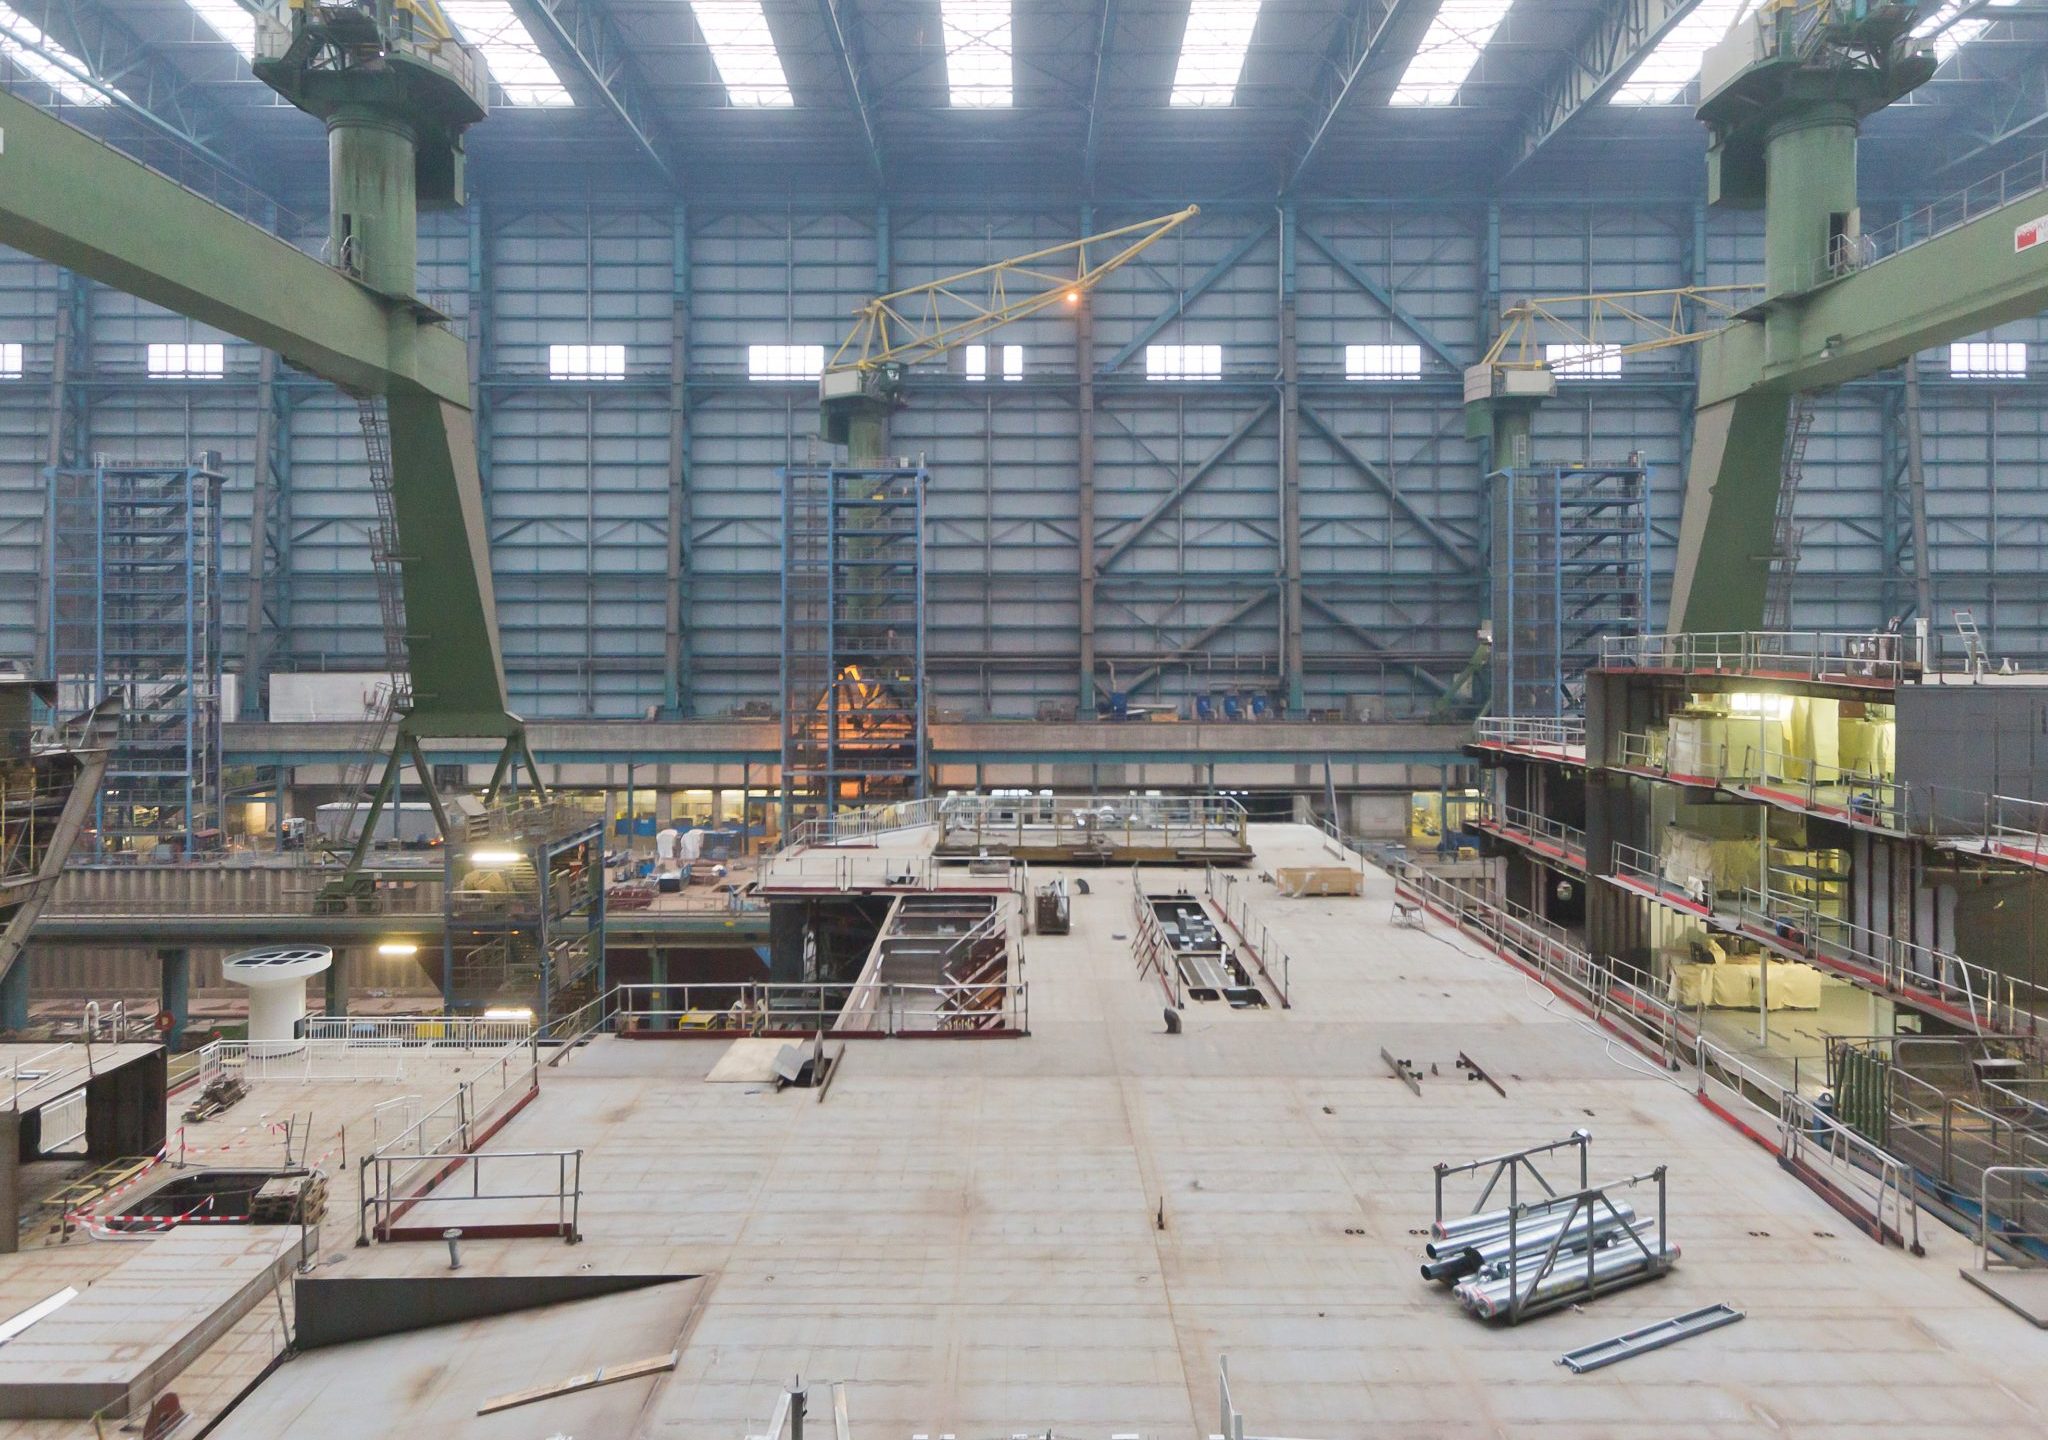 Meyer Werft in Papenburg. (Foto Raimond Spekking/Wikimedia Commons)